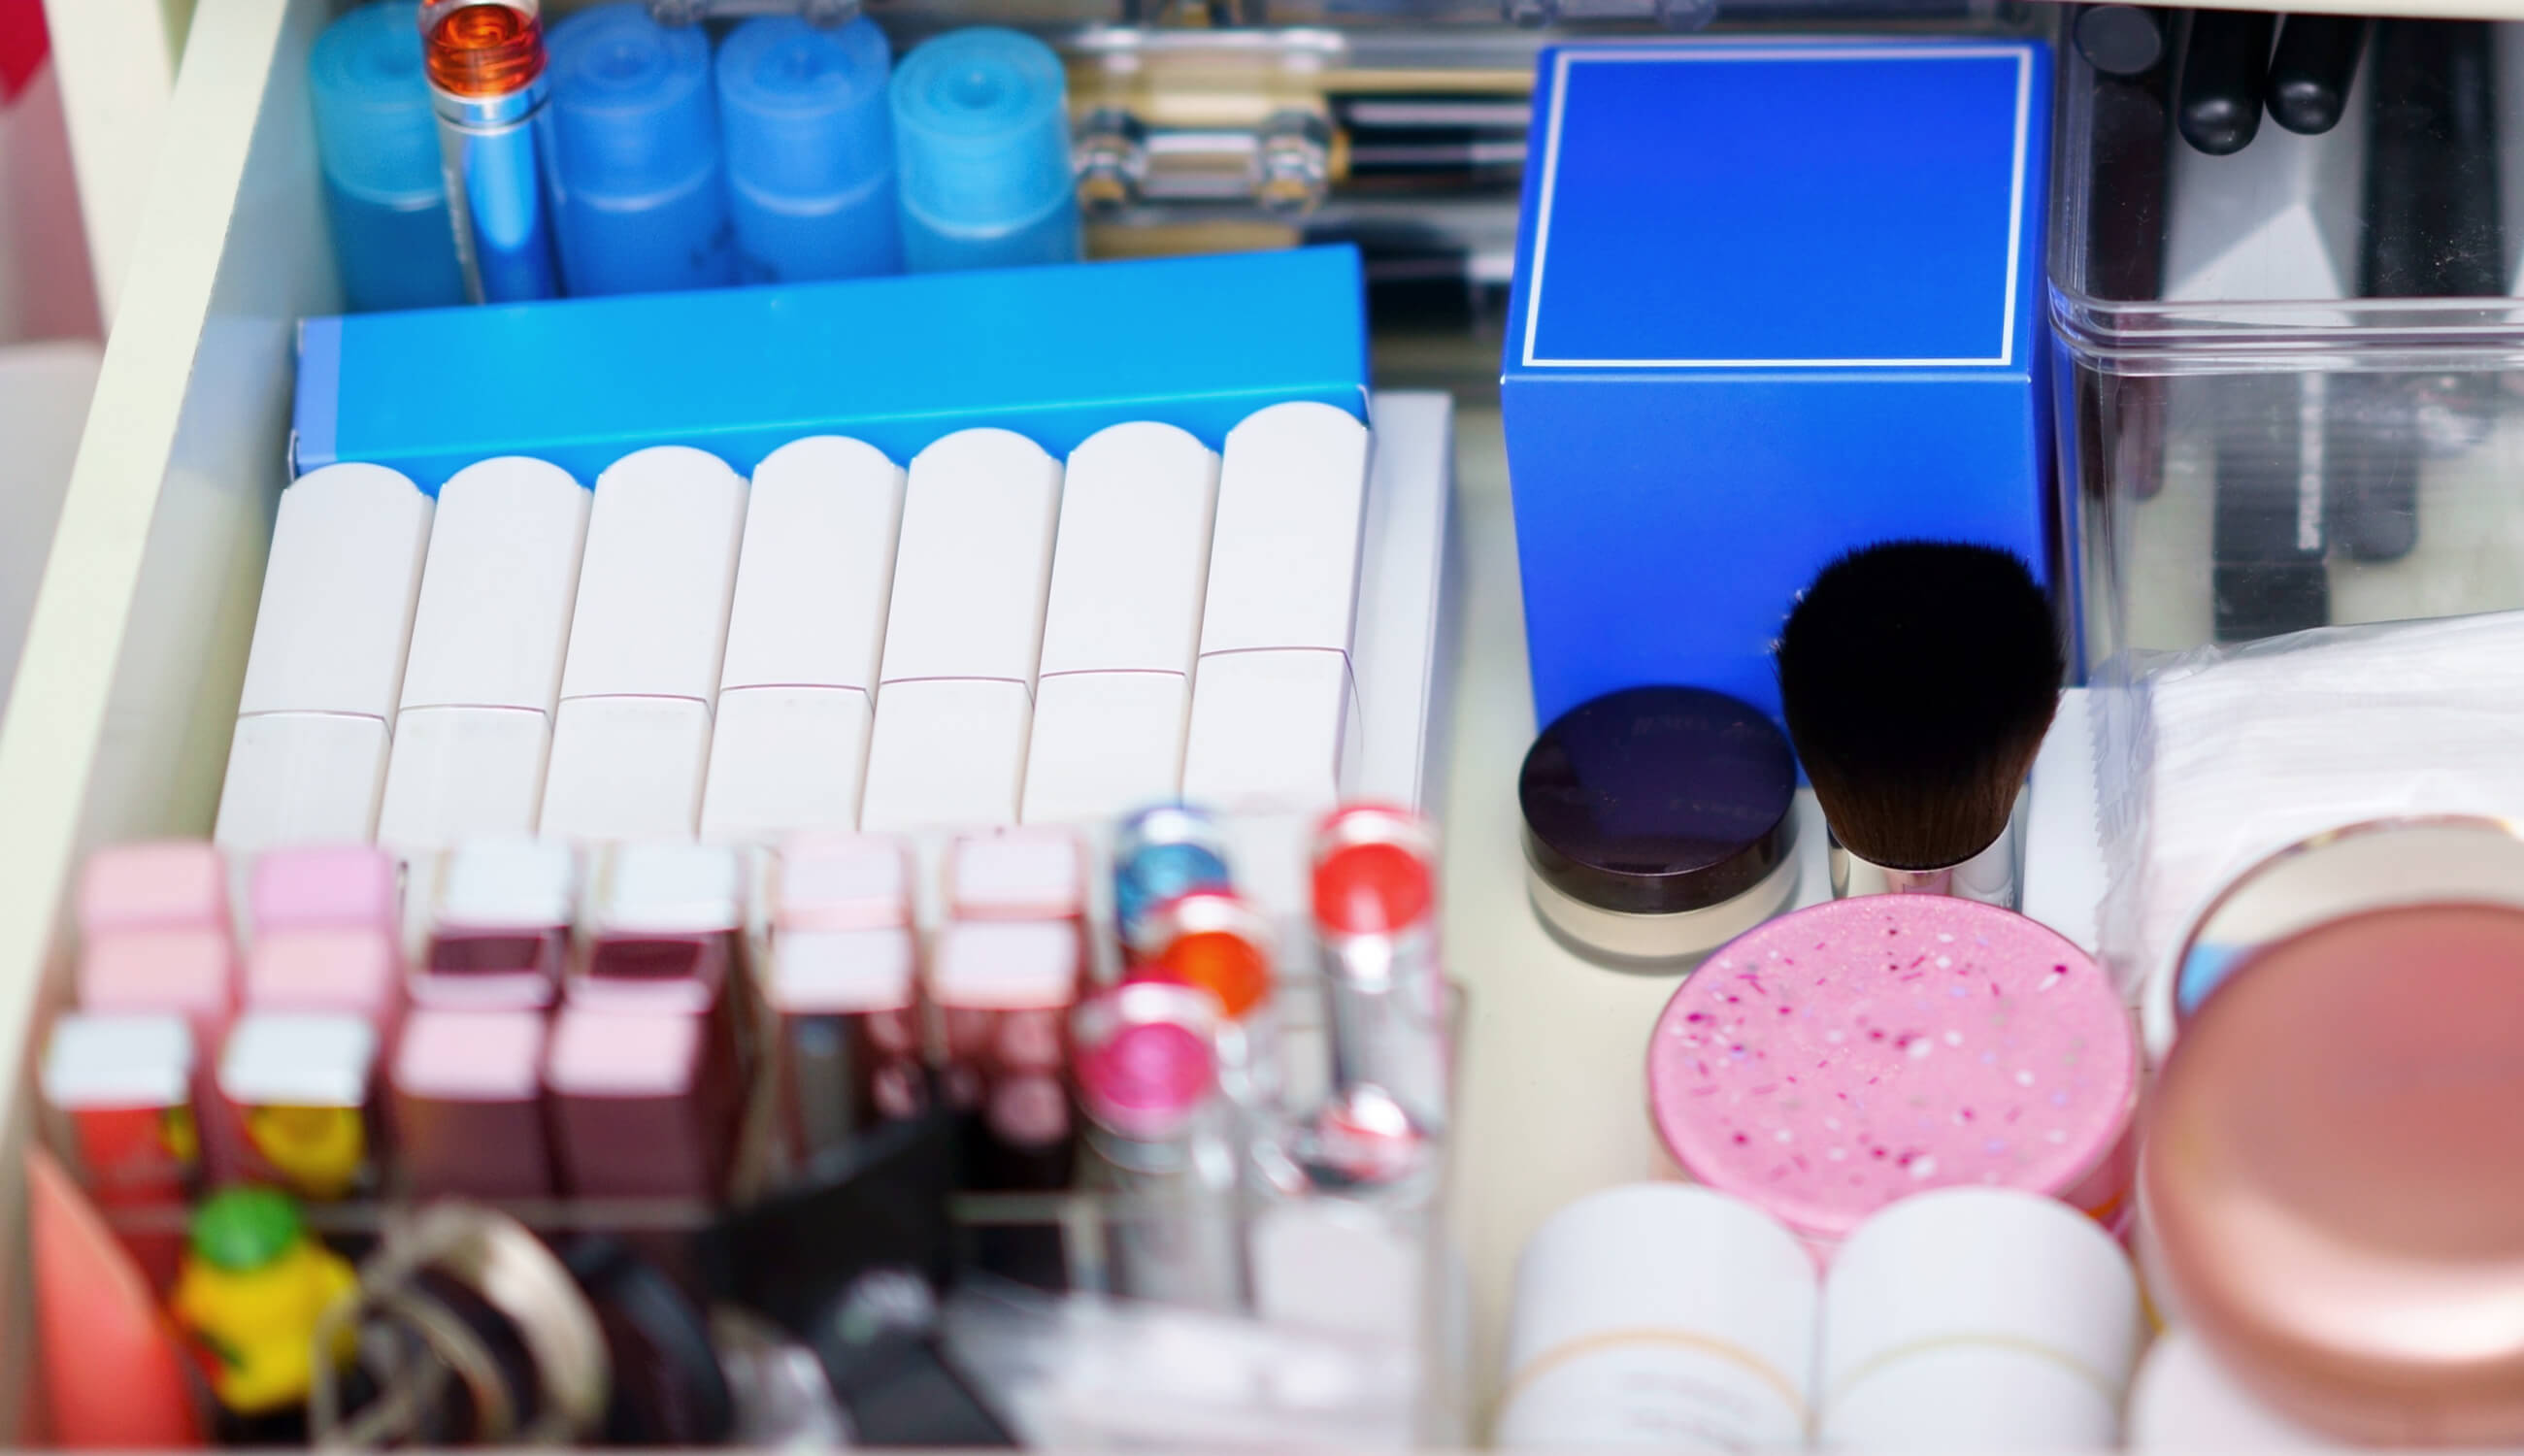 Makeup drawer